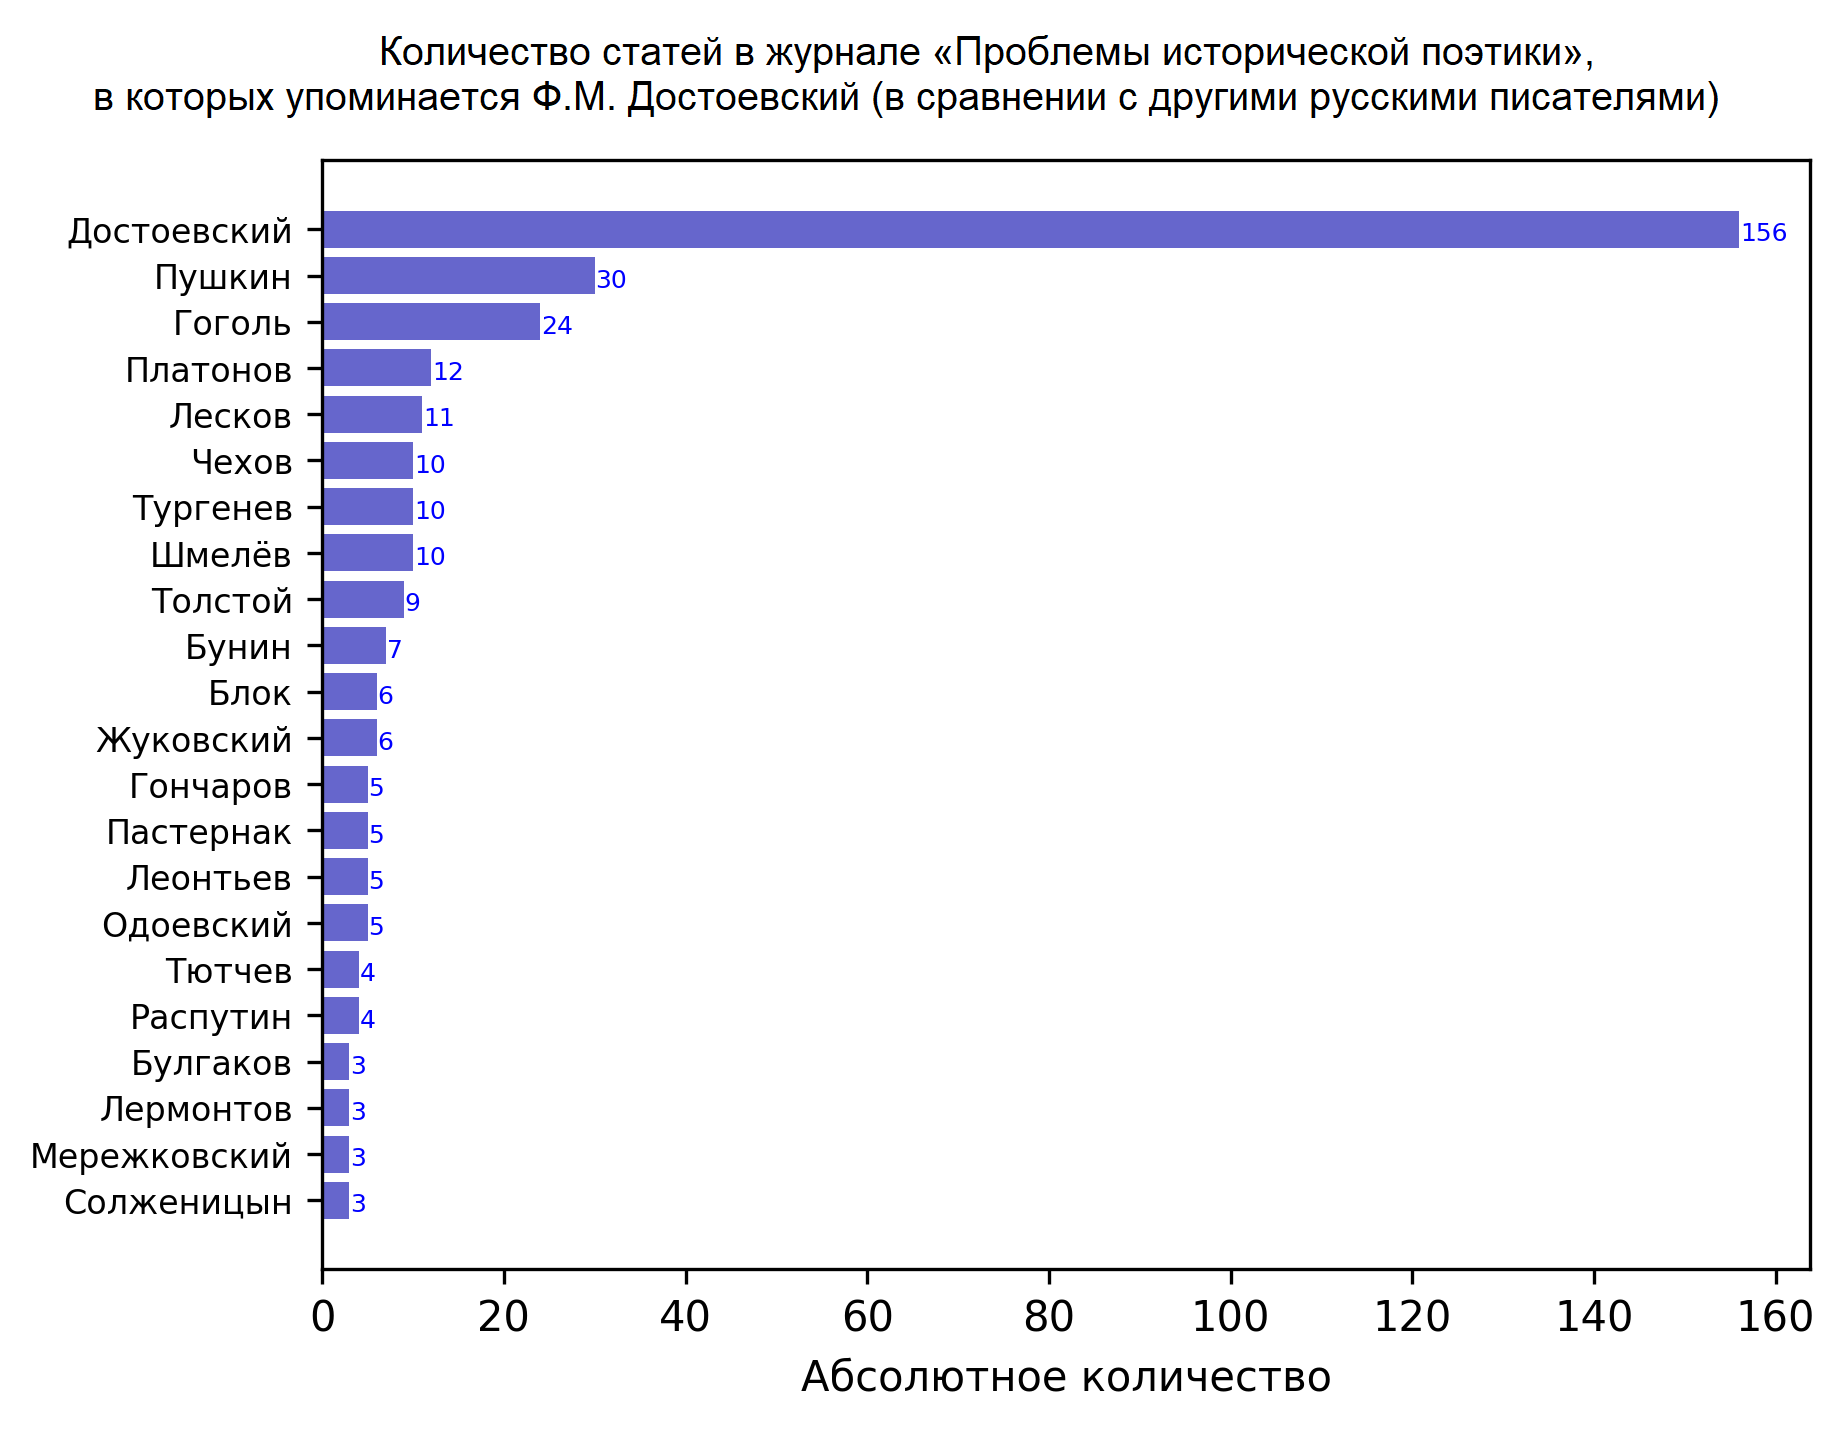 Количество статей в журнале «Проблемы исторической поэтики», в которых упоминается Ф.М. Достоевский (в сравнении с другими русскими писателями)